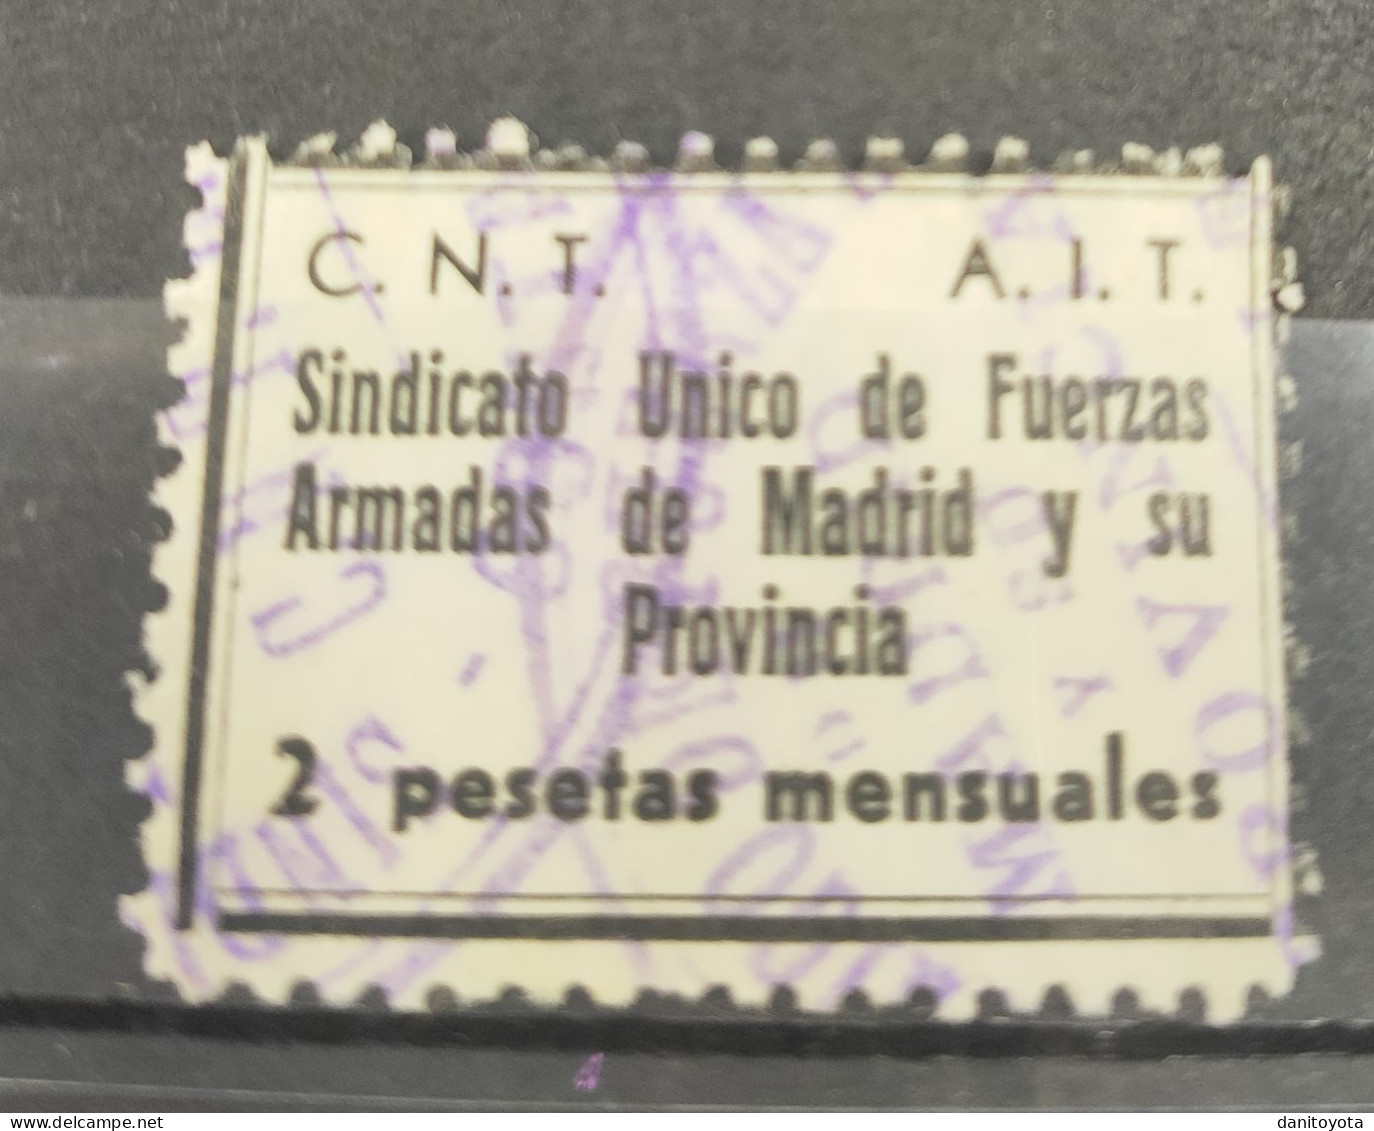 MADRID. EDIFIL N/C. 2 PTAS NEGRO CNT- AIT. - Republican Issues